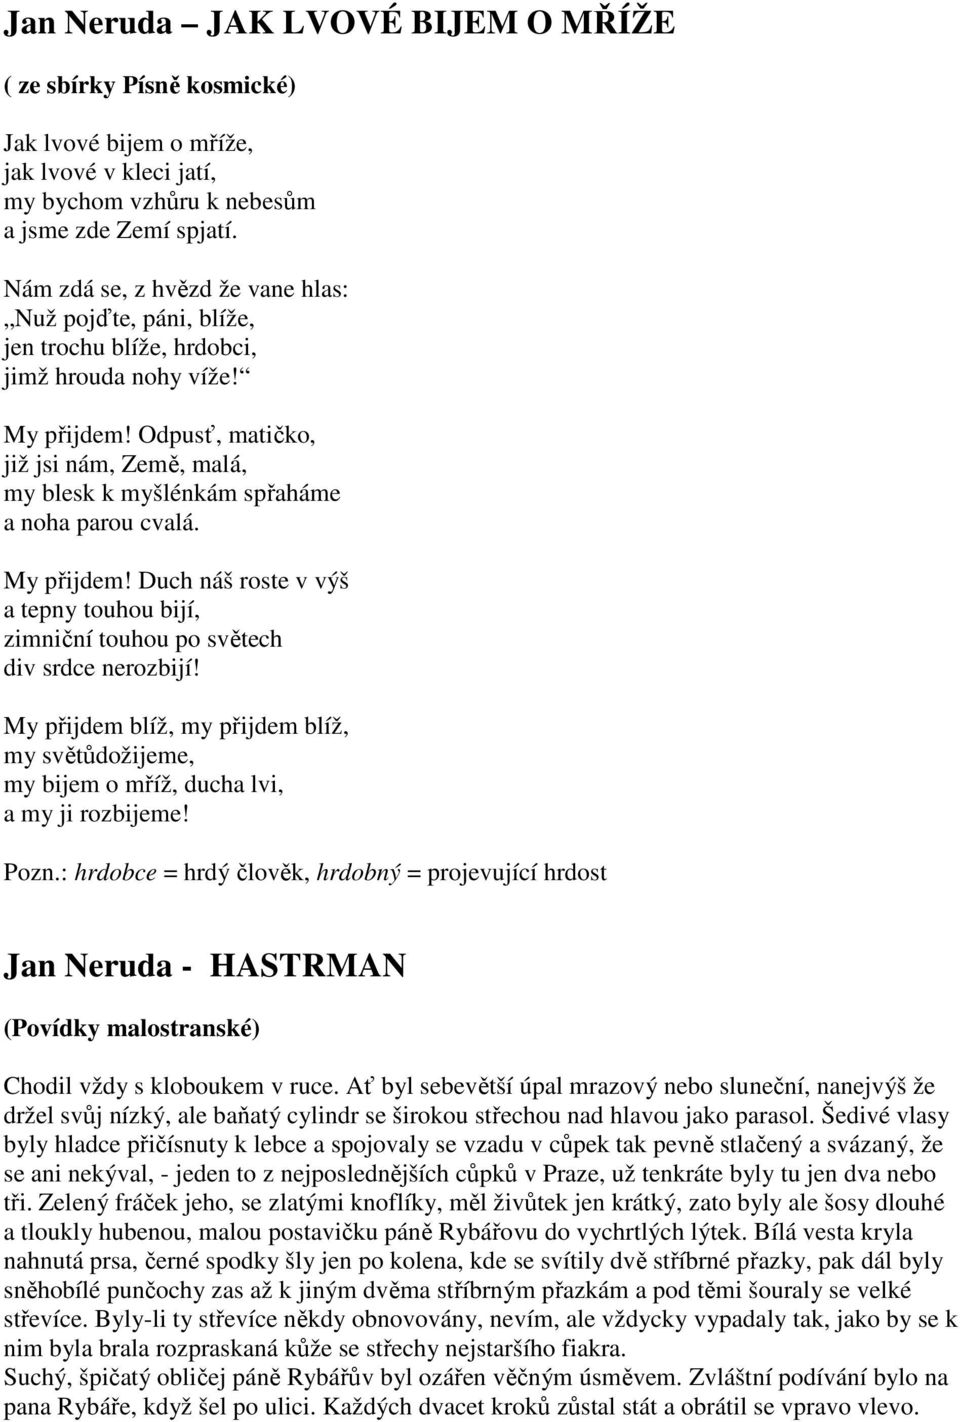 ČESKÝ JAZYK MÁJOVCI májovci almanachu Máj - program generace májovců:  hlavní představitelé generace májovců: Jan Neruda ( ) - - PDF Stažení zdarma